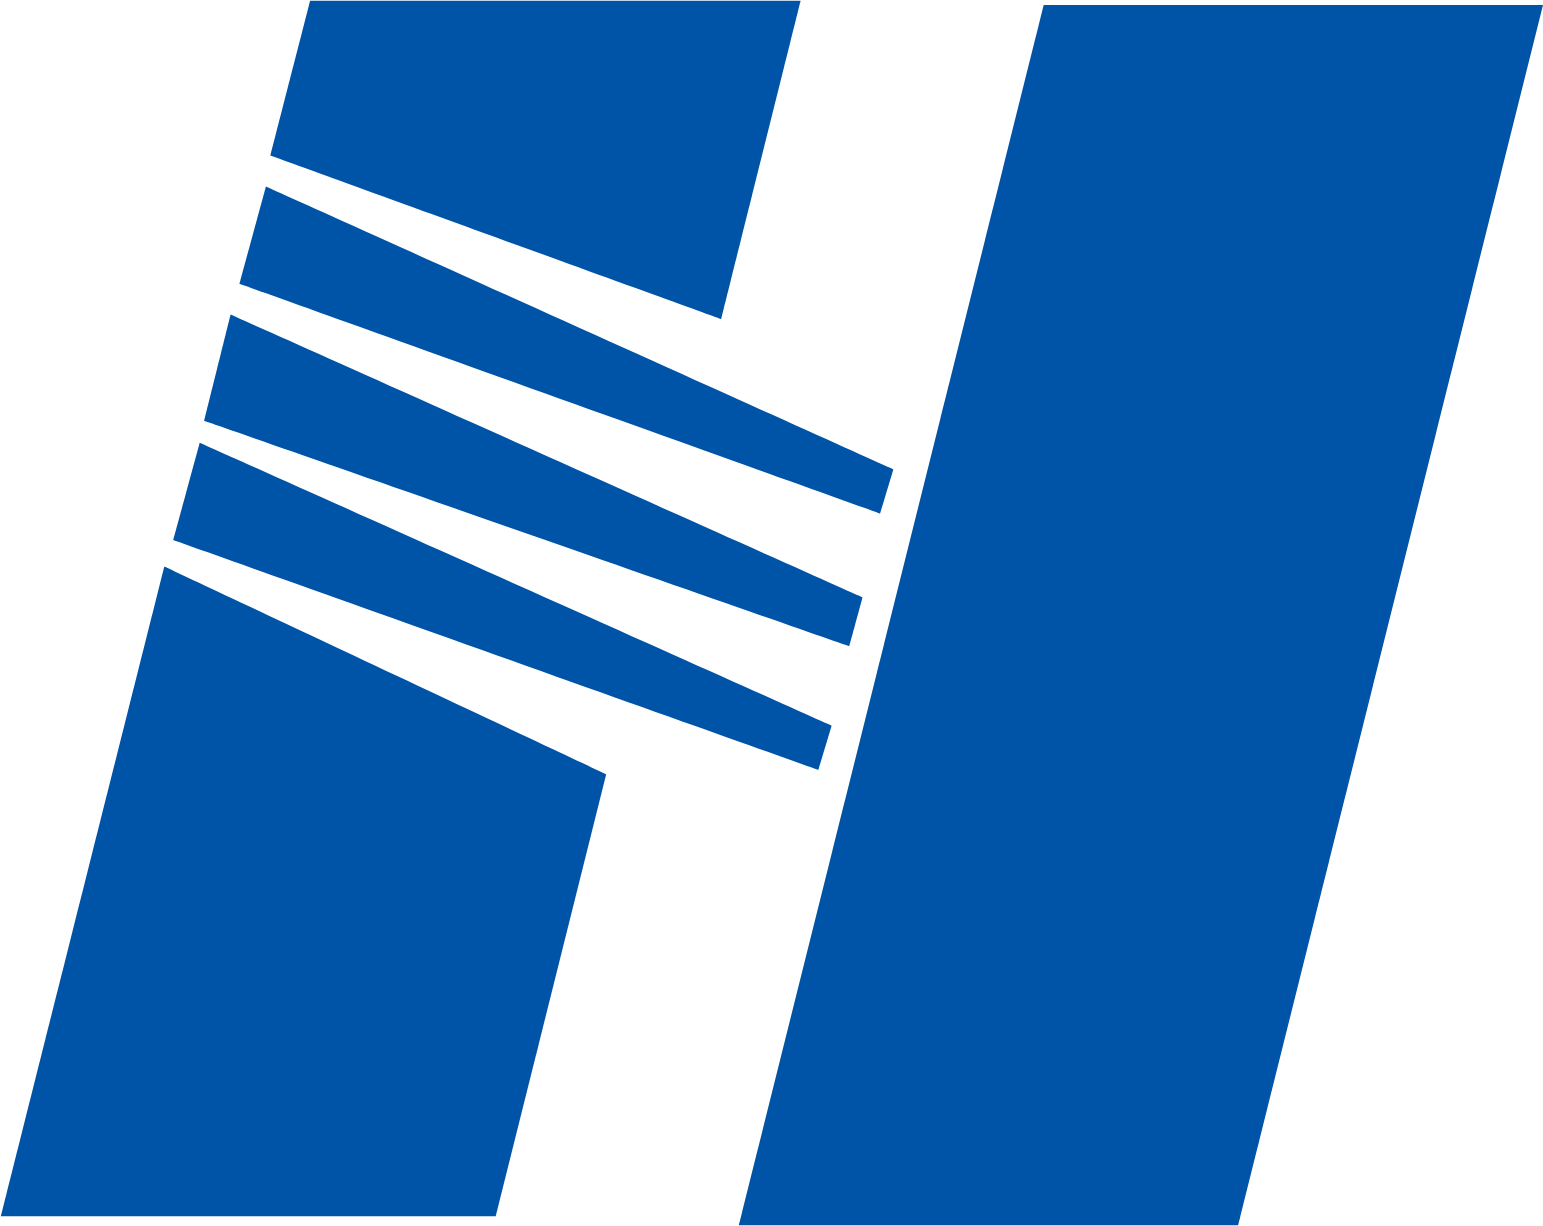 Ооо пауэр интернэшнл. Huaneng. Power International. Пауэр Интернэшнл шины логотип. China Huaneng Group.